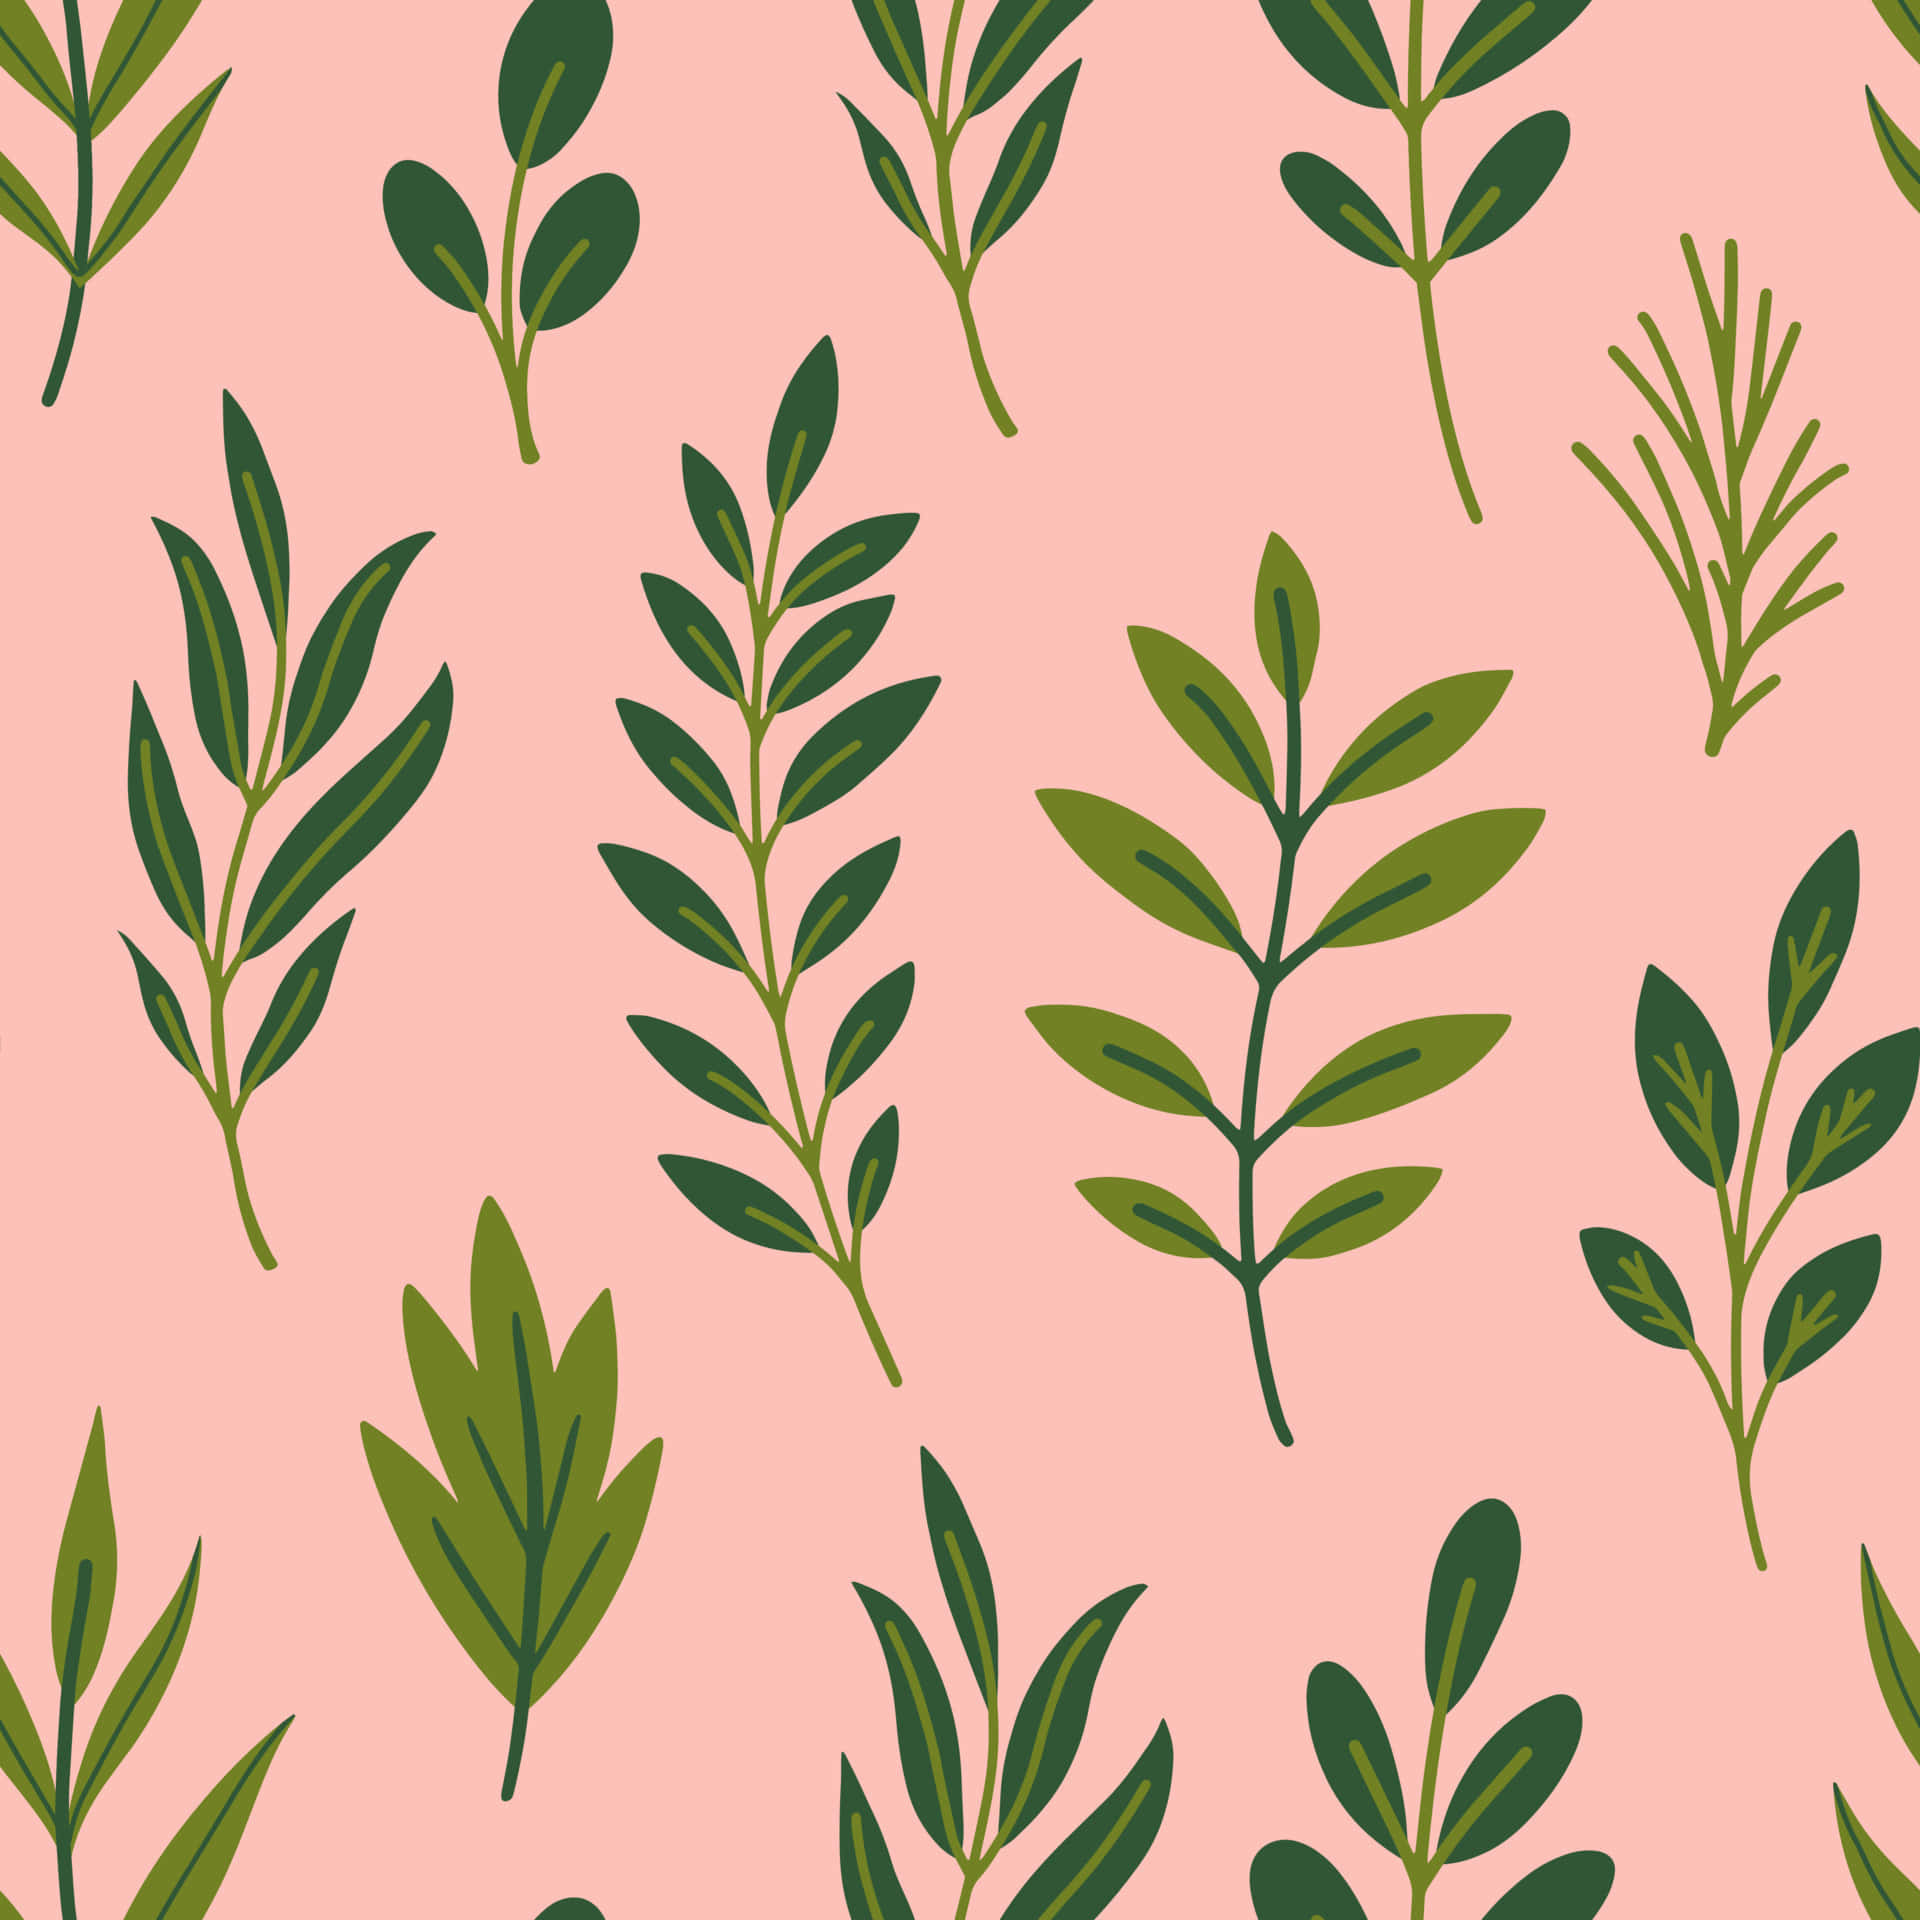 Green Leaf Patterns_ Pink Background Wallpaper